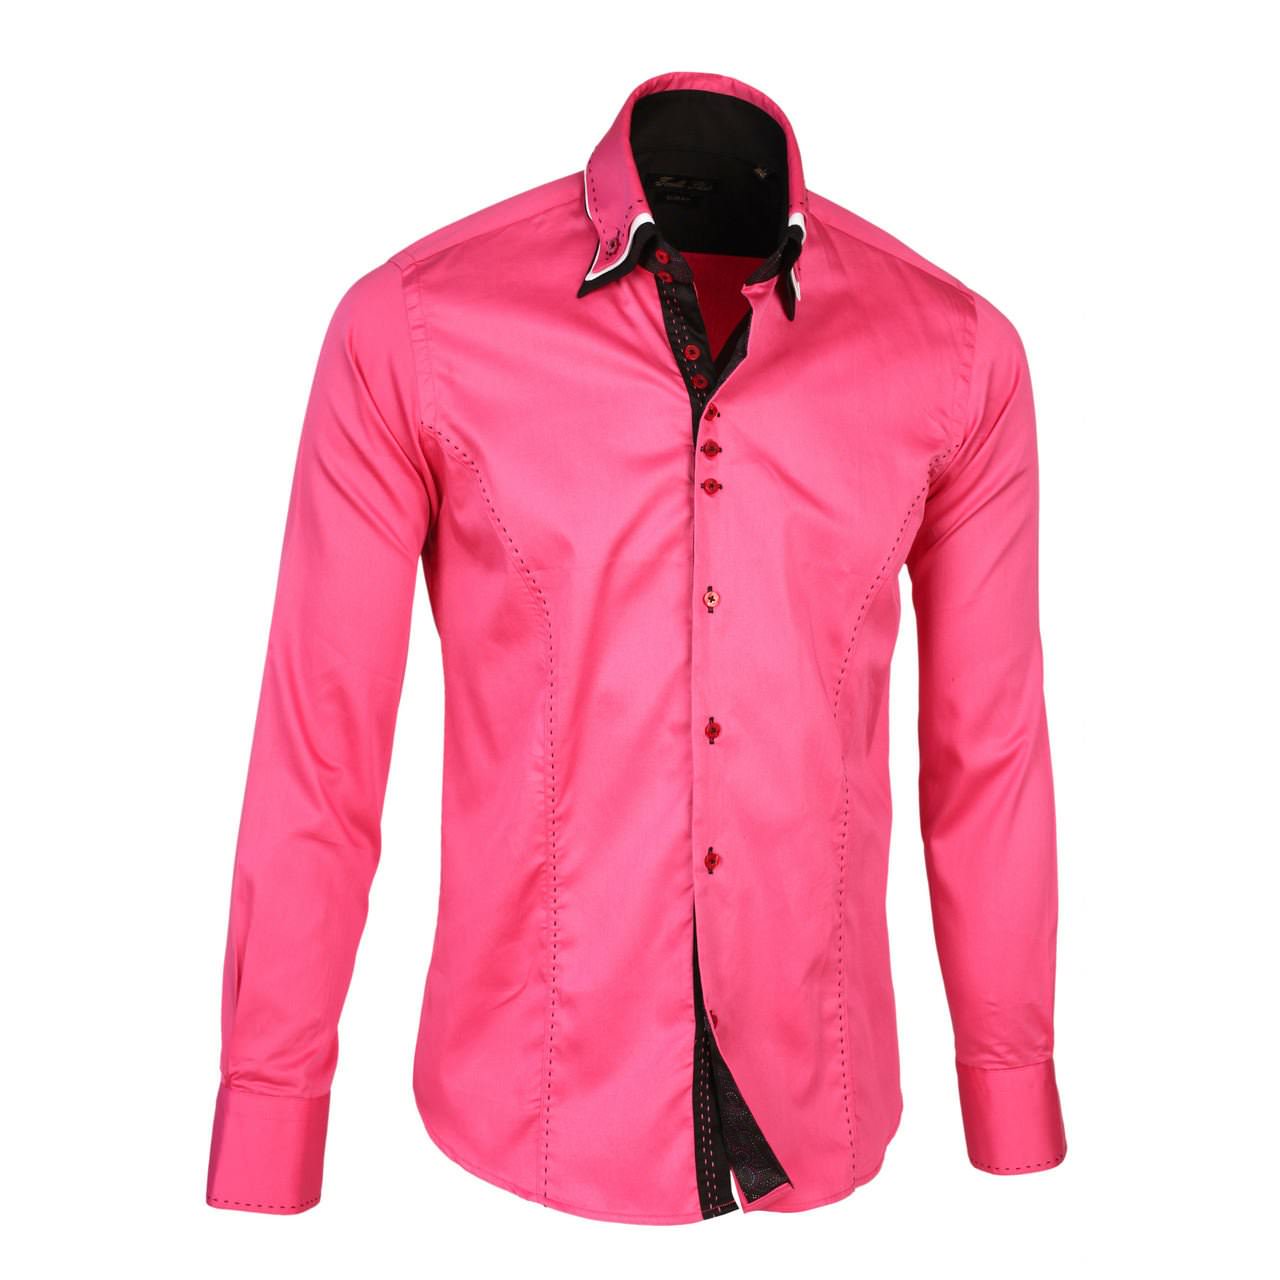 Мужчина в розовой рубашке